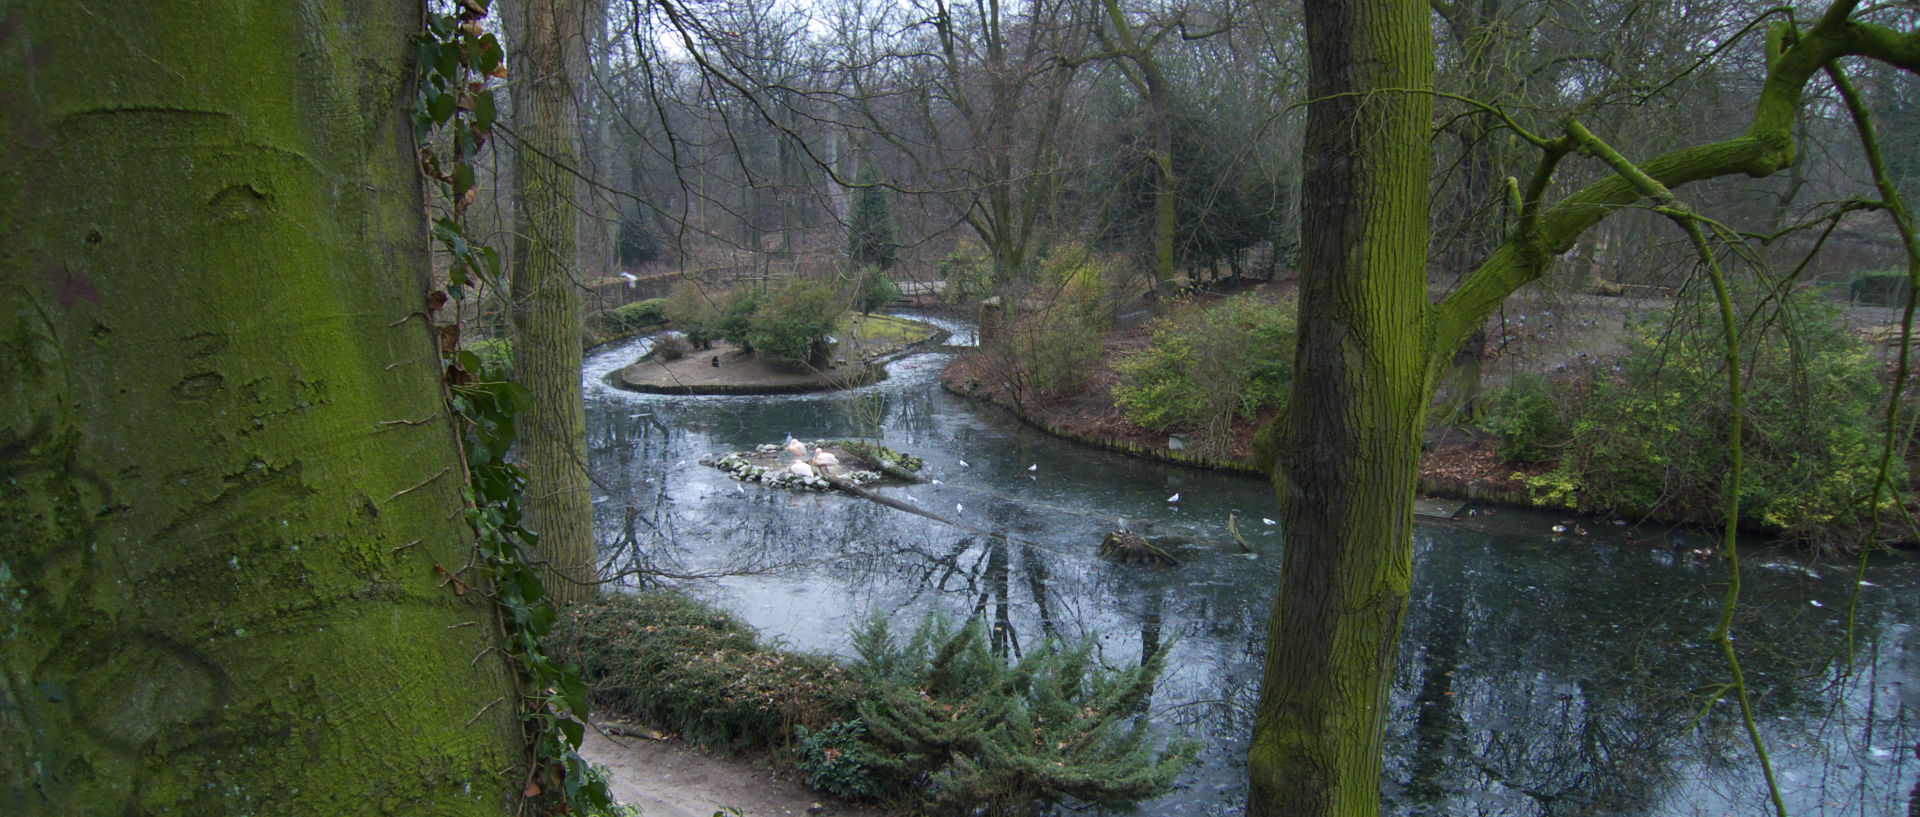 Vendredi 16 janvier 2009, 16:41, le zoo de Lille.